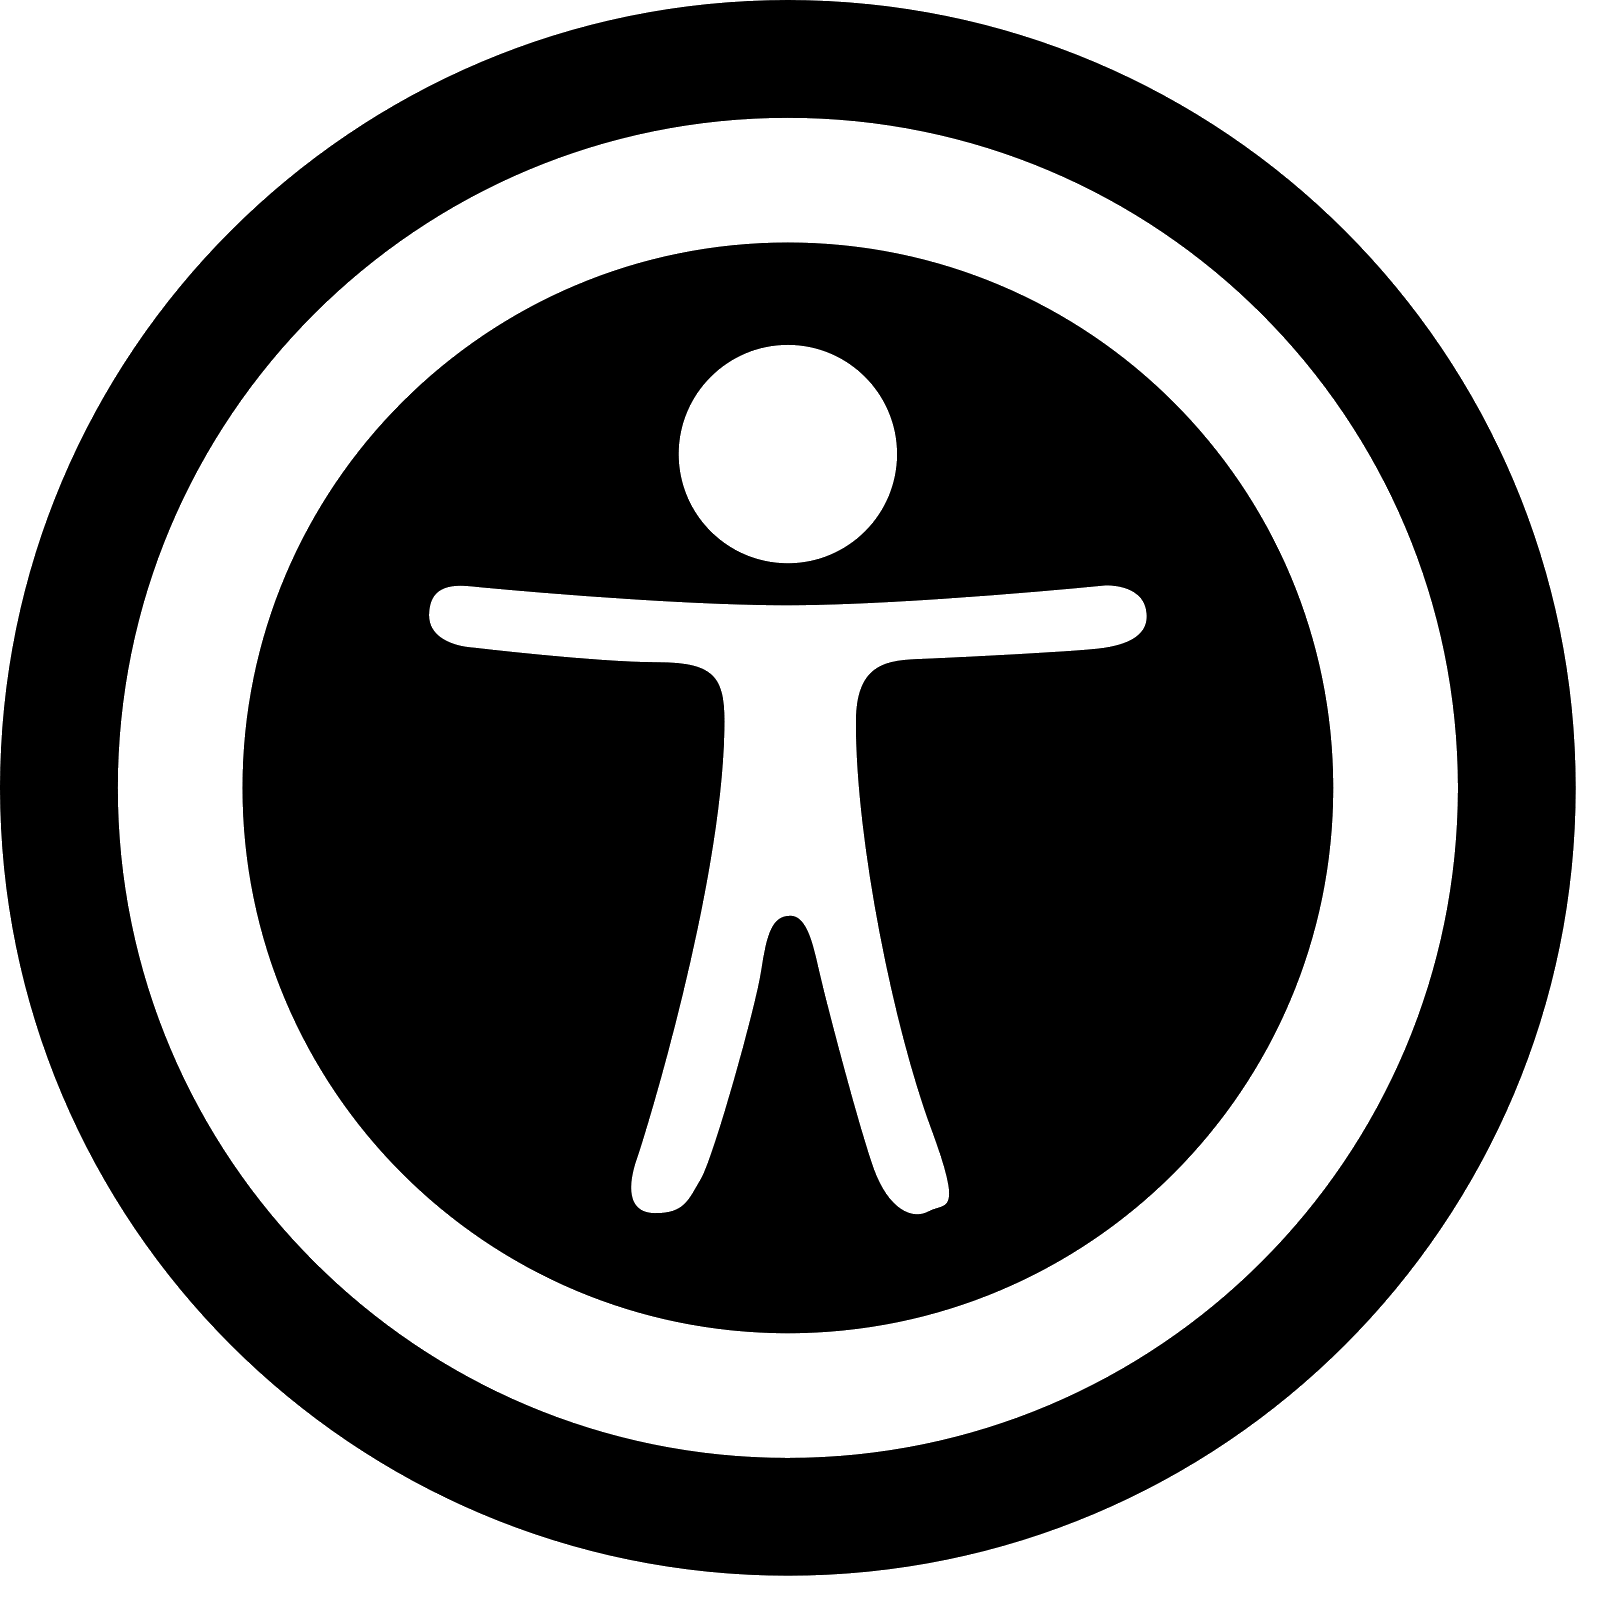 Accessibility Logo - Accessibility logo png 4 » PNG Image